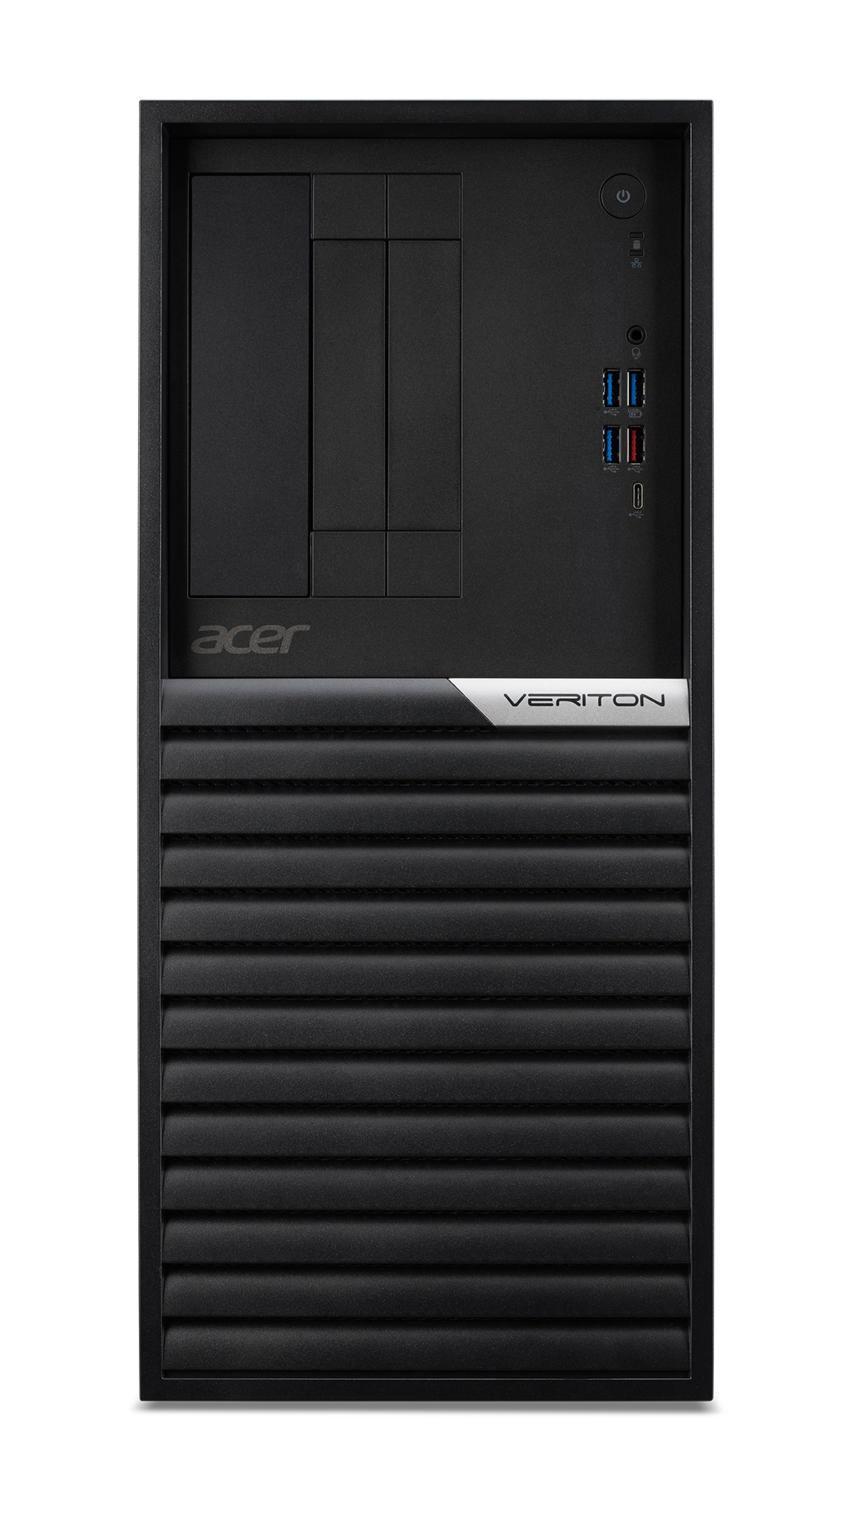 Aanbieding Desktops. Acer Veriton Mini K4690G I75132 Pro PC